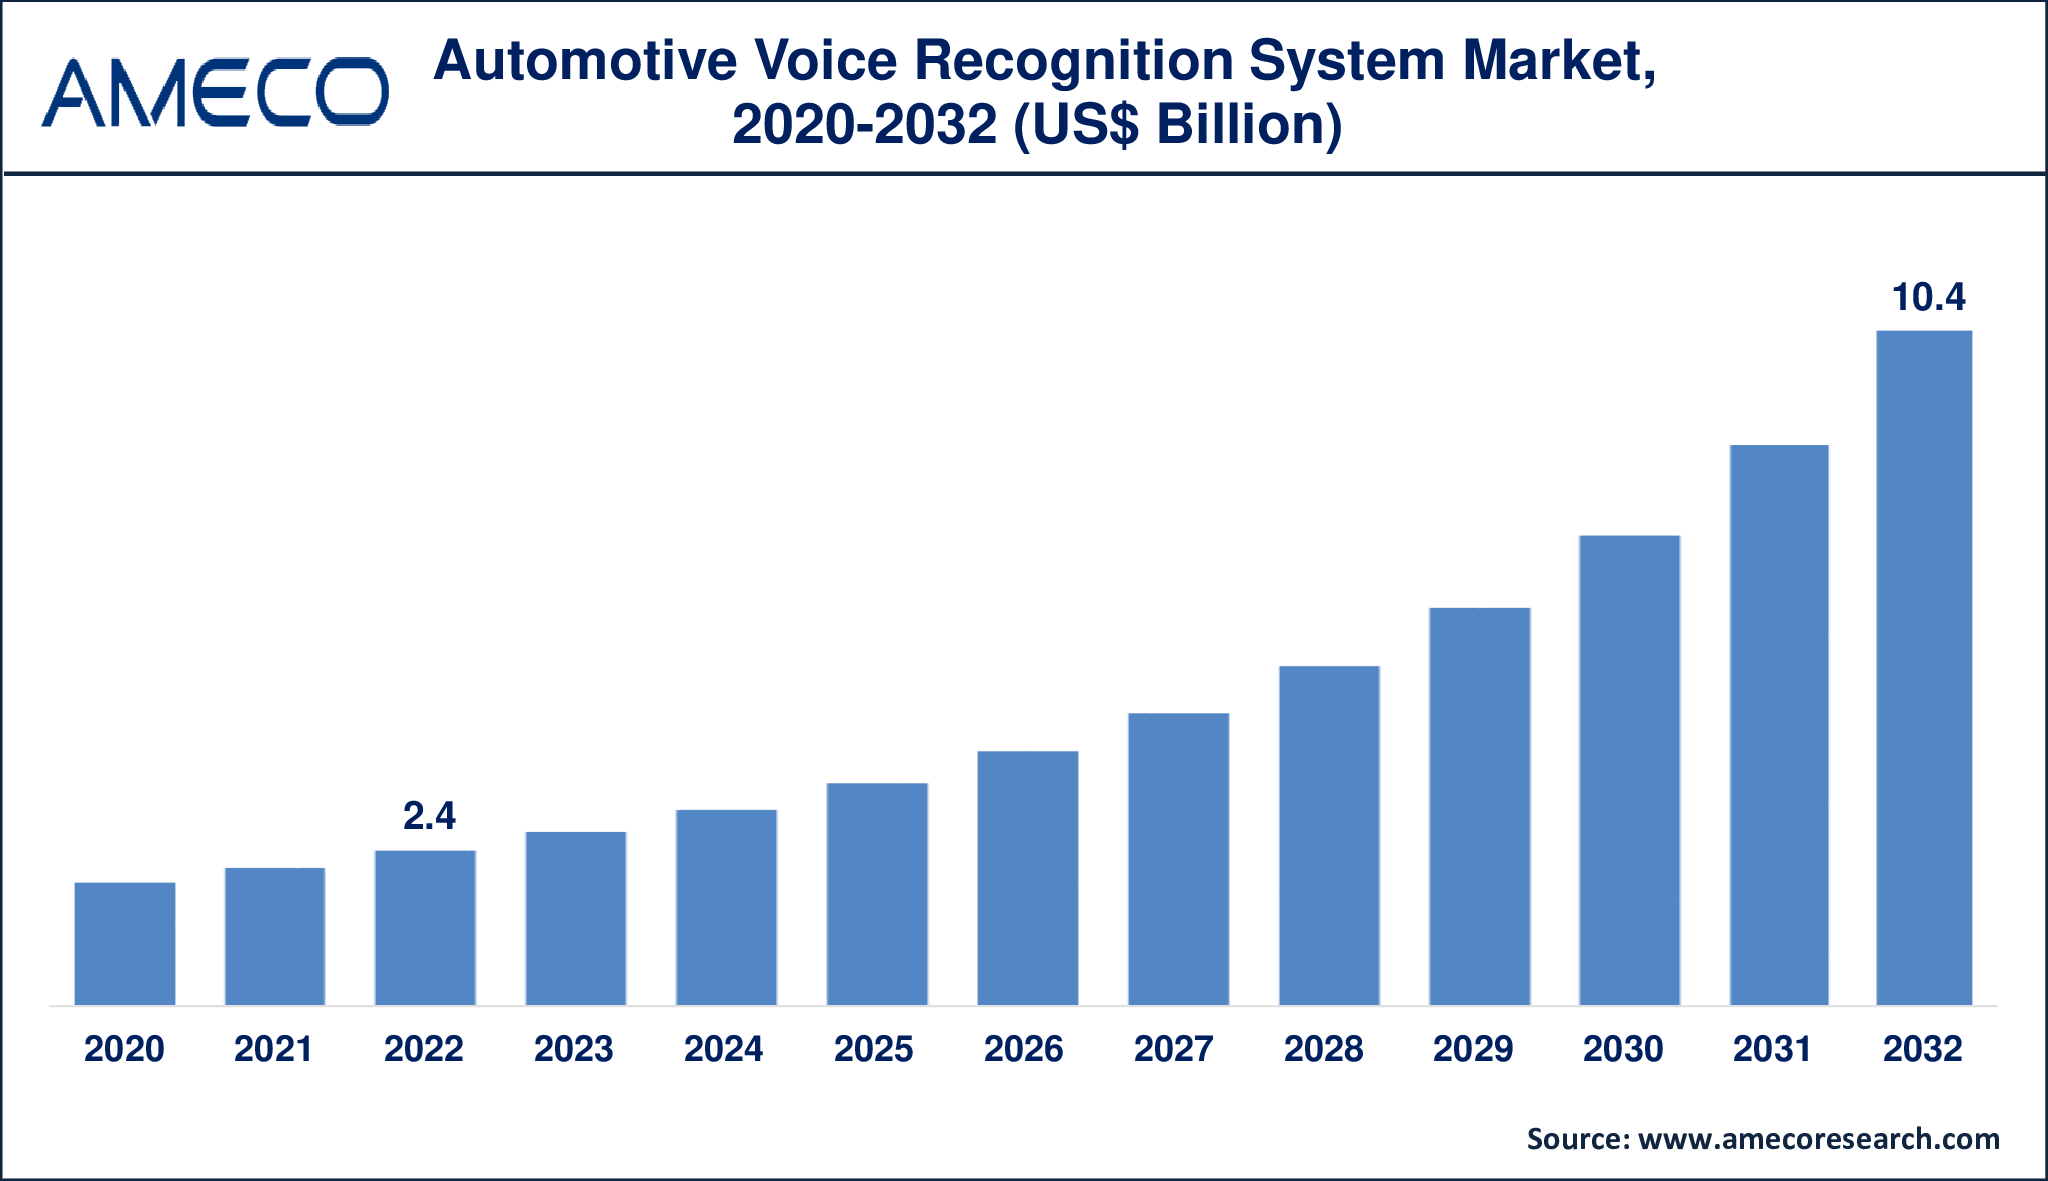 Automotive Voice Recognition System Market Dynamics